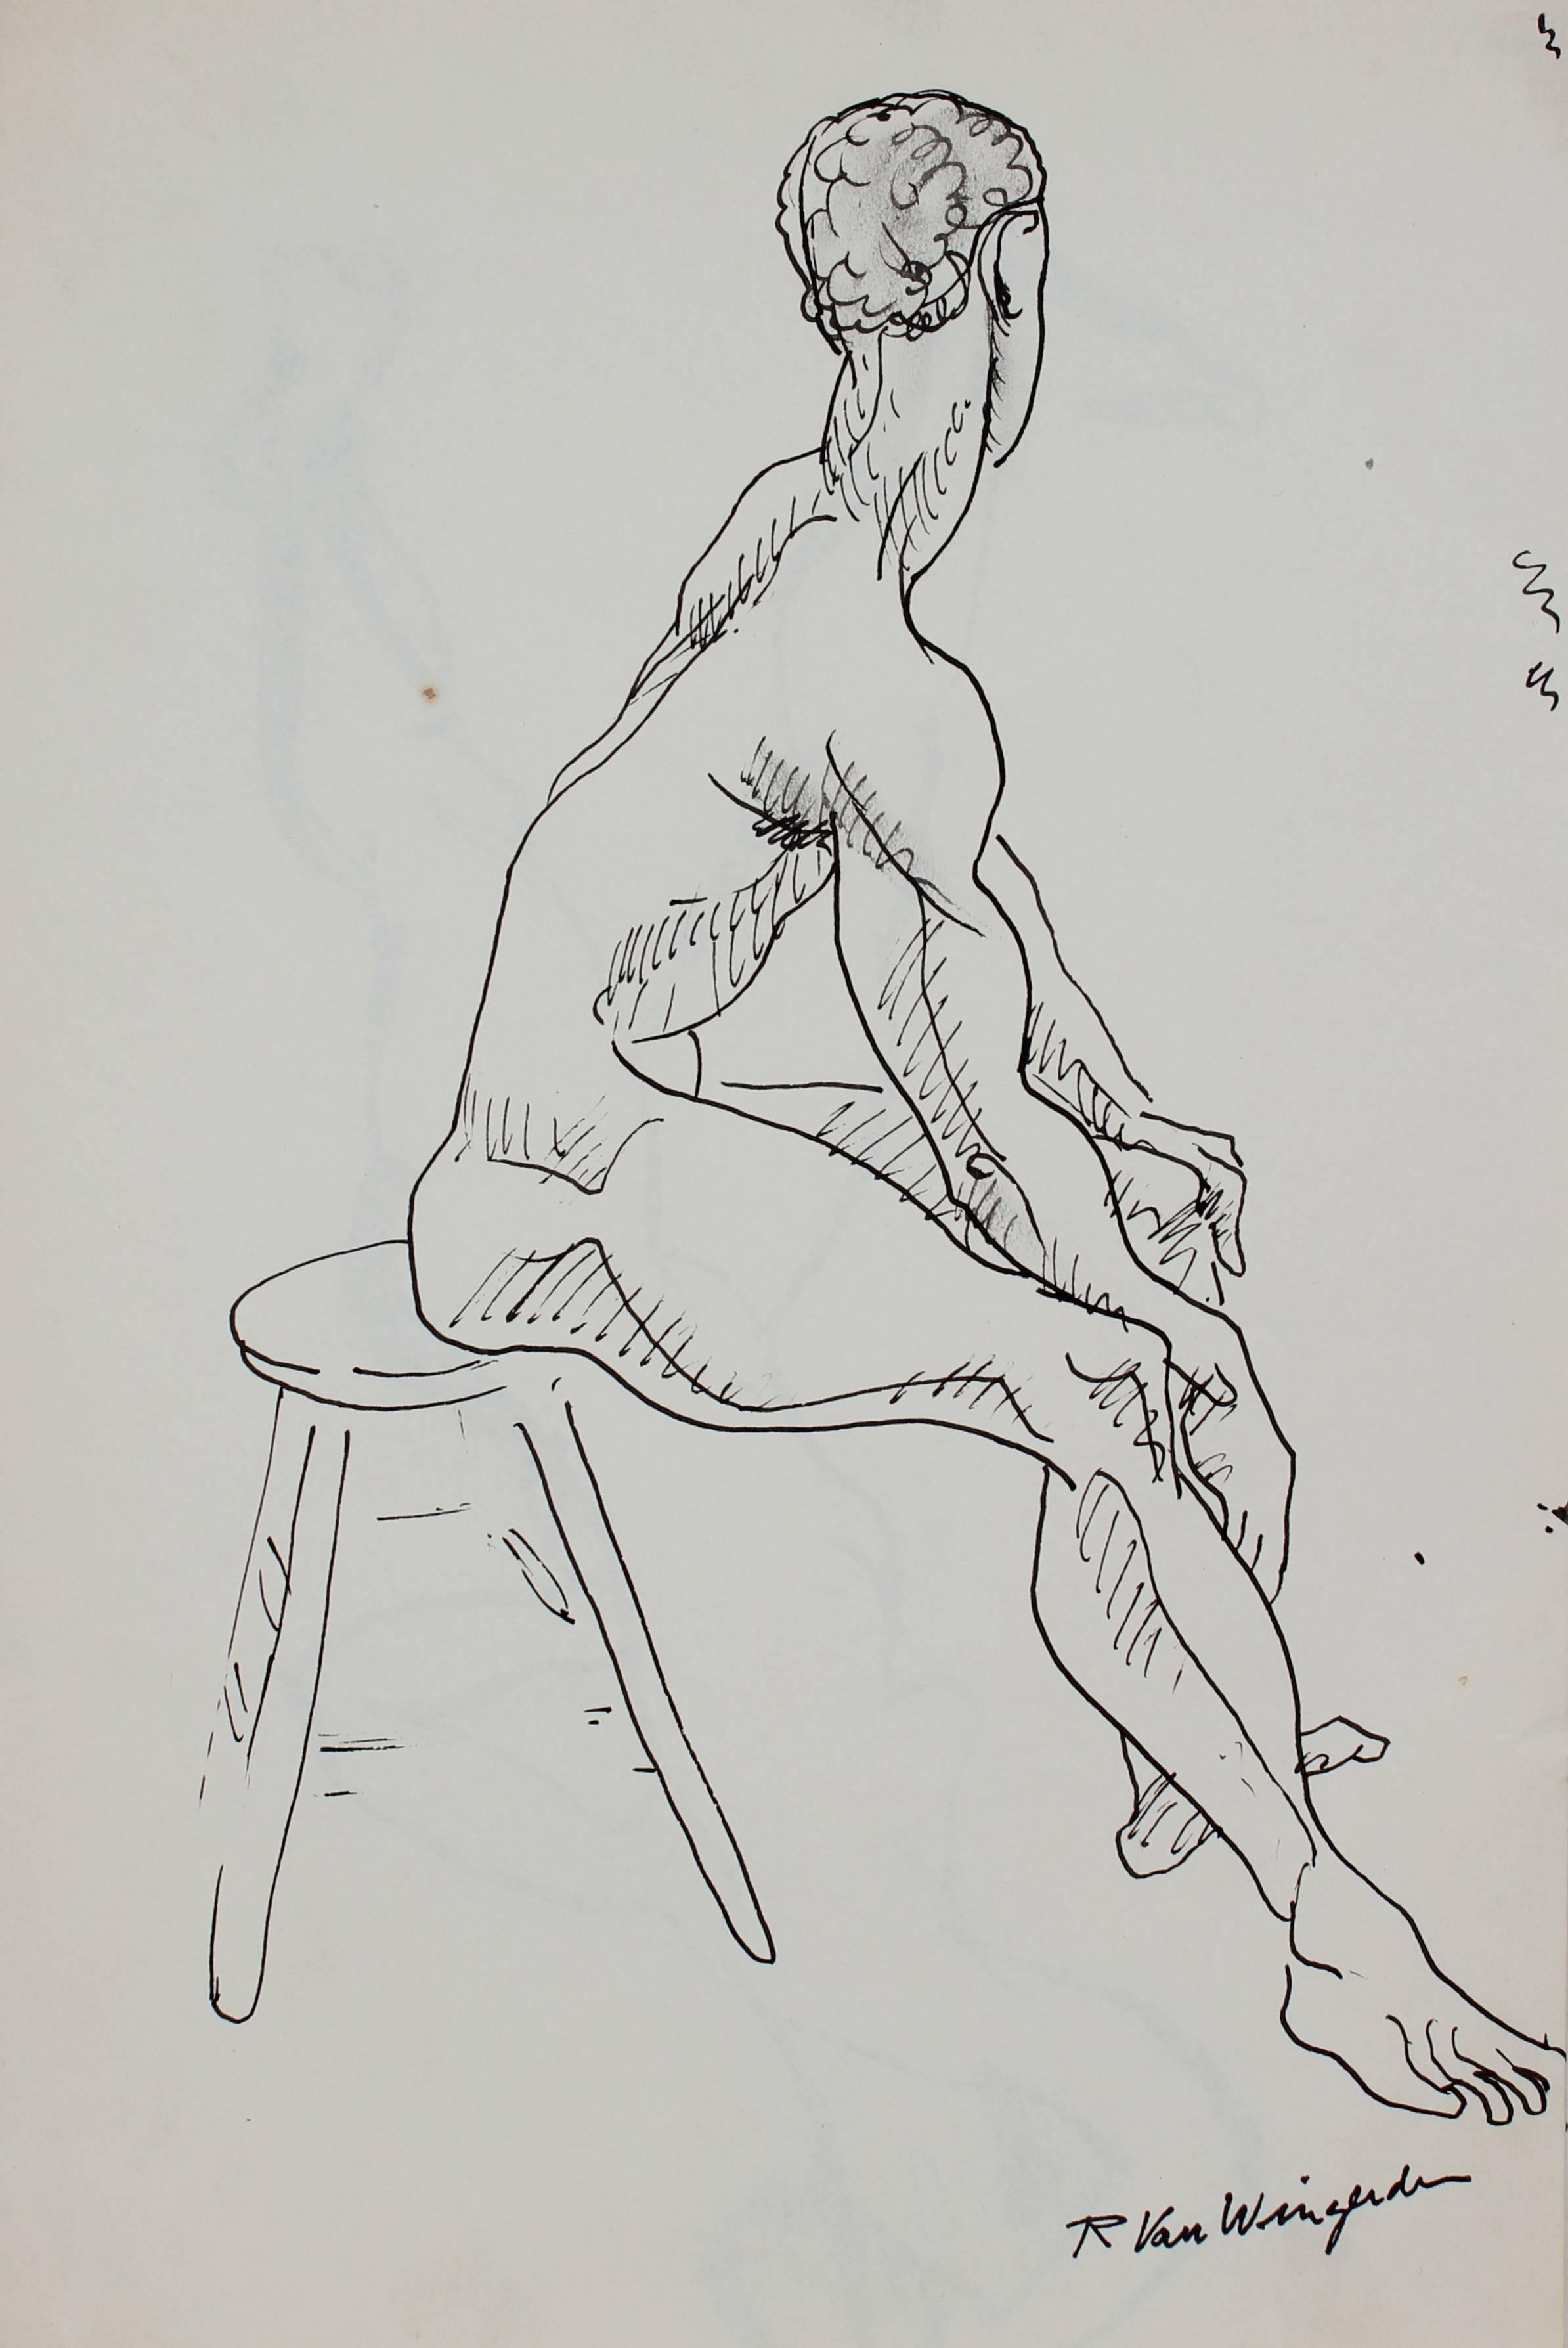 Richard Van Wingerden Nude - Seated Male Figure in Ink, Circa 1950s